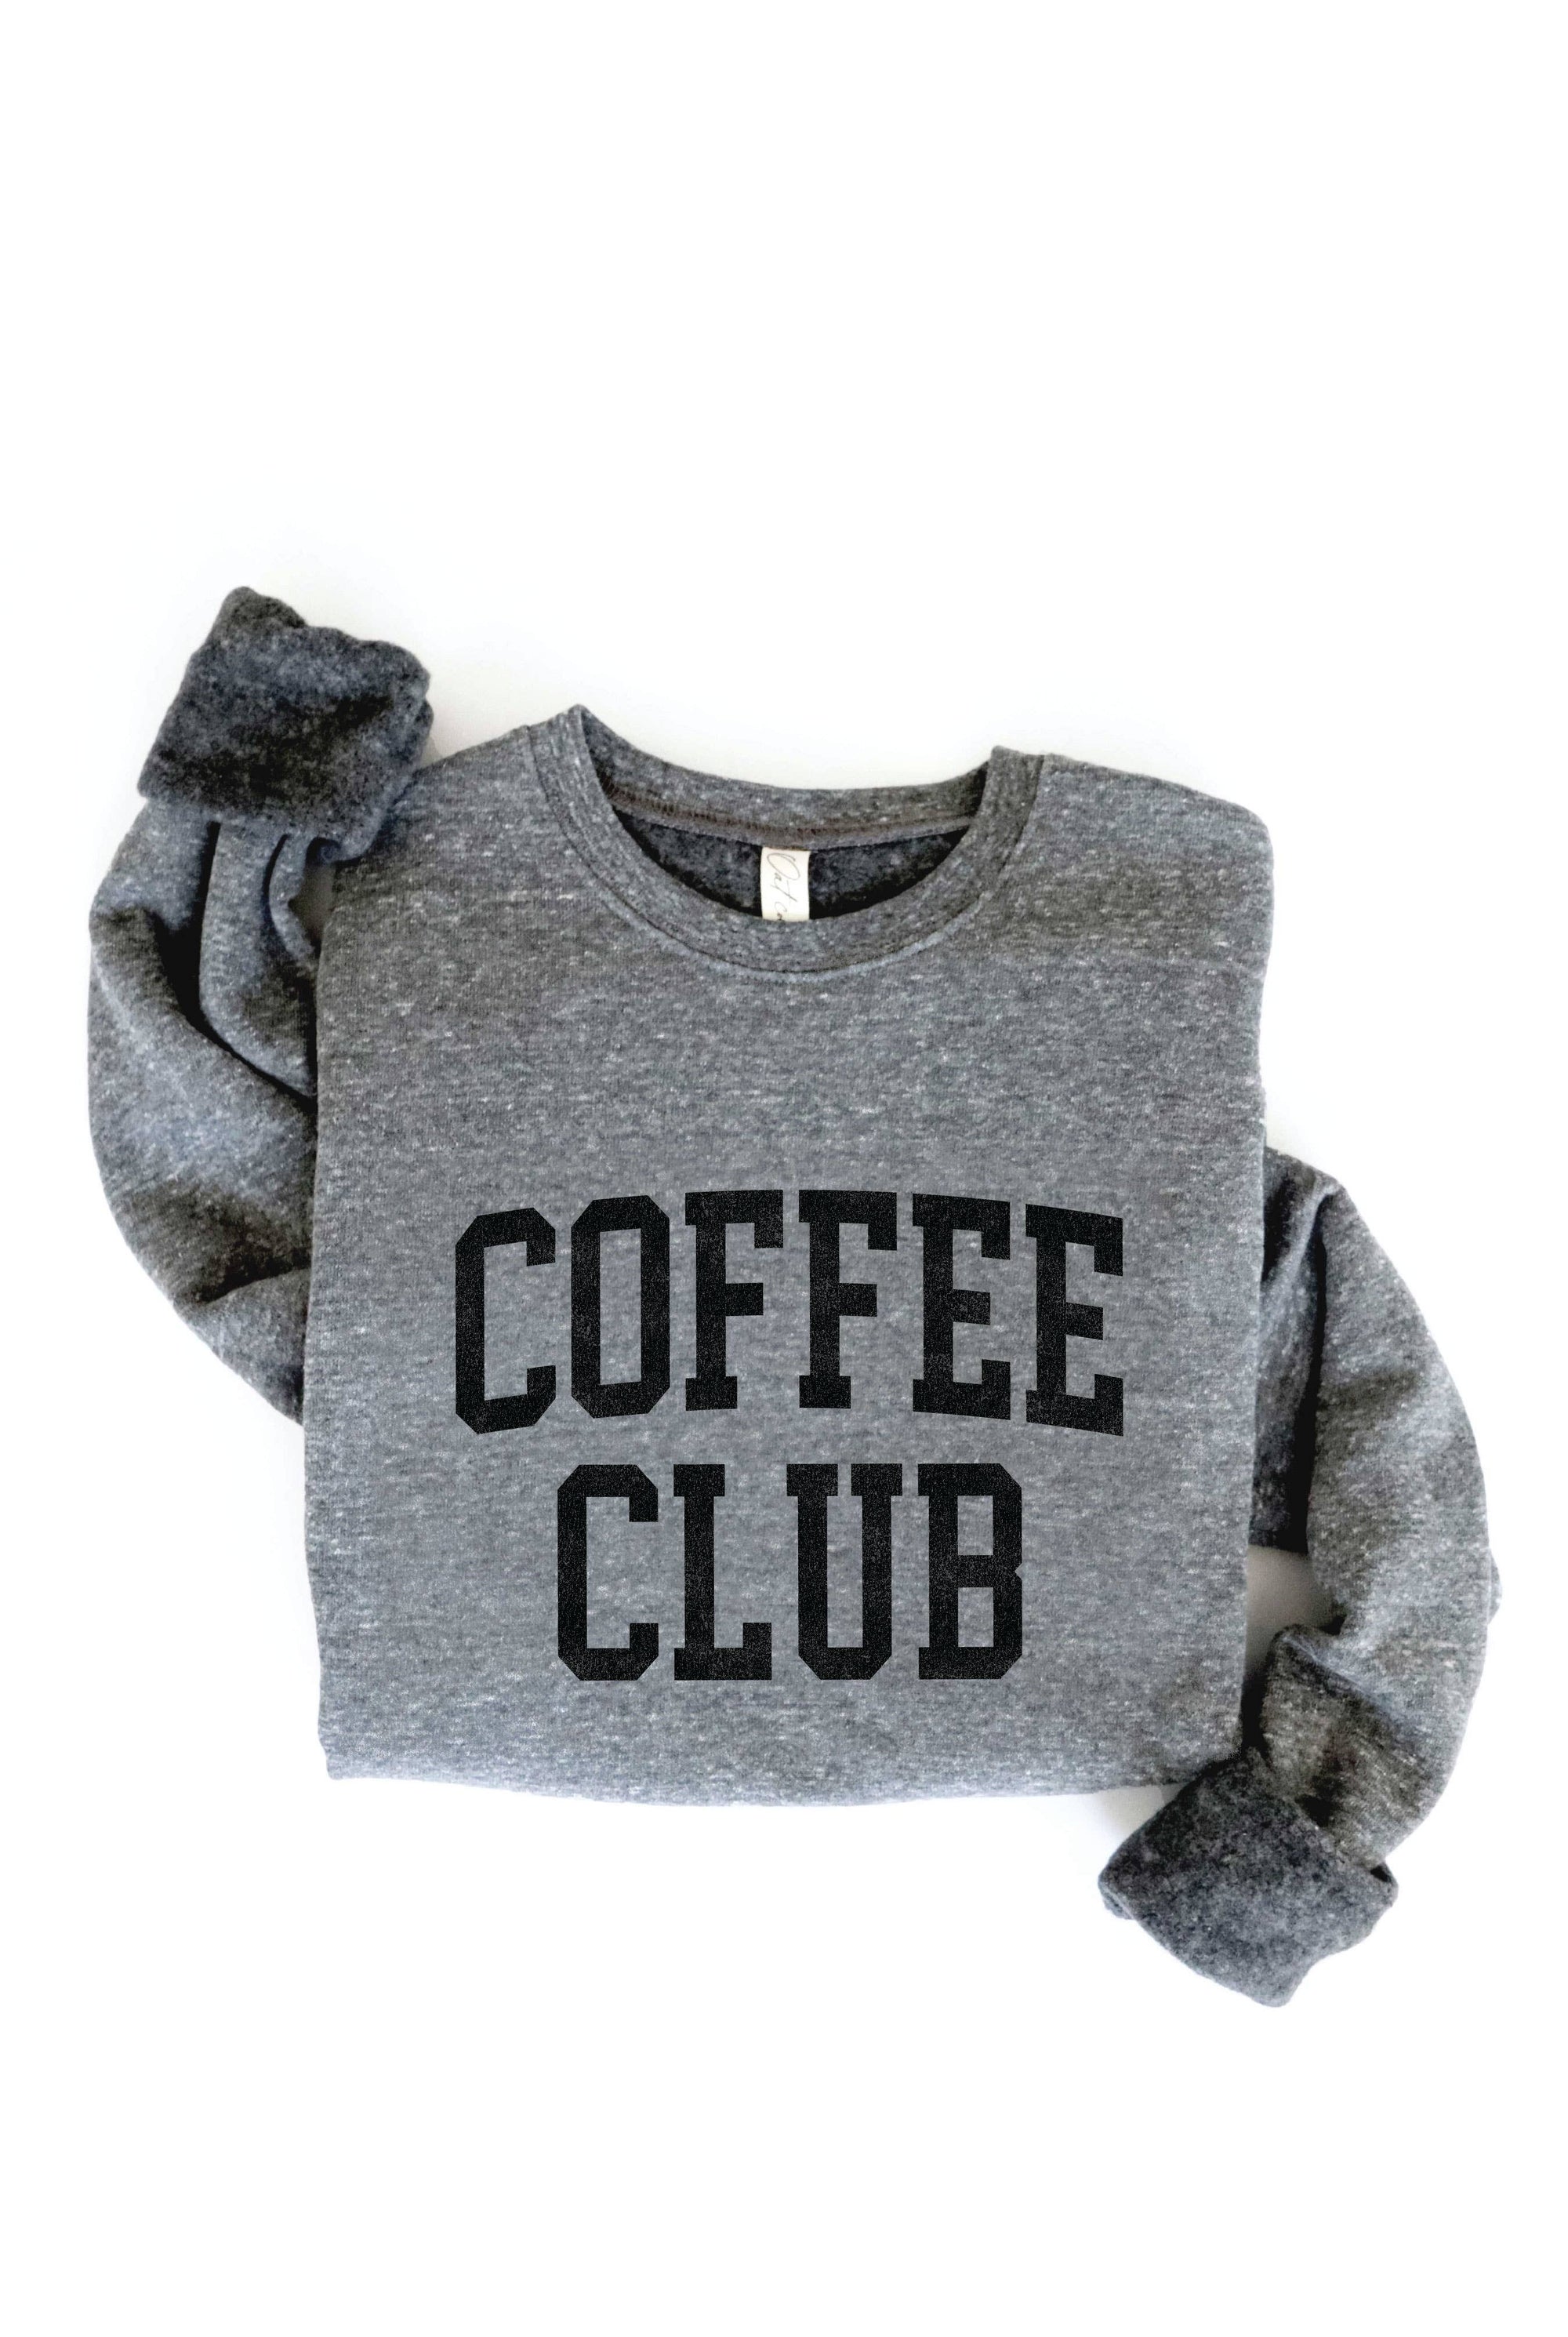 COFFEE CLUB Graphic Sweatshirt